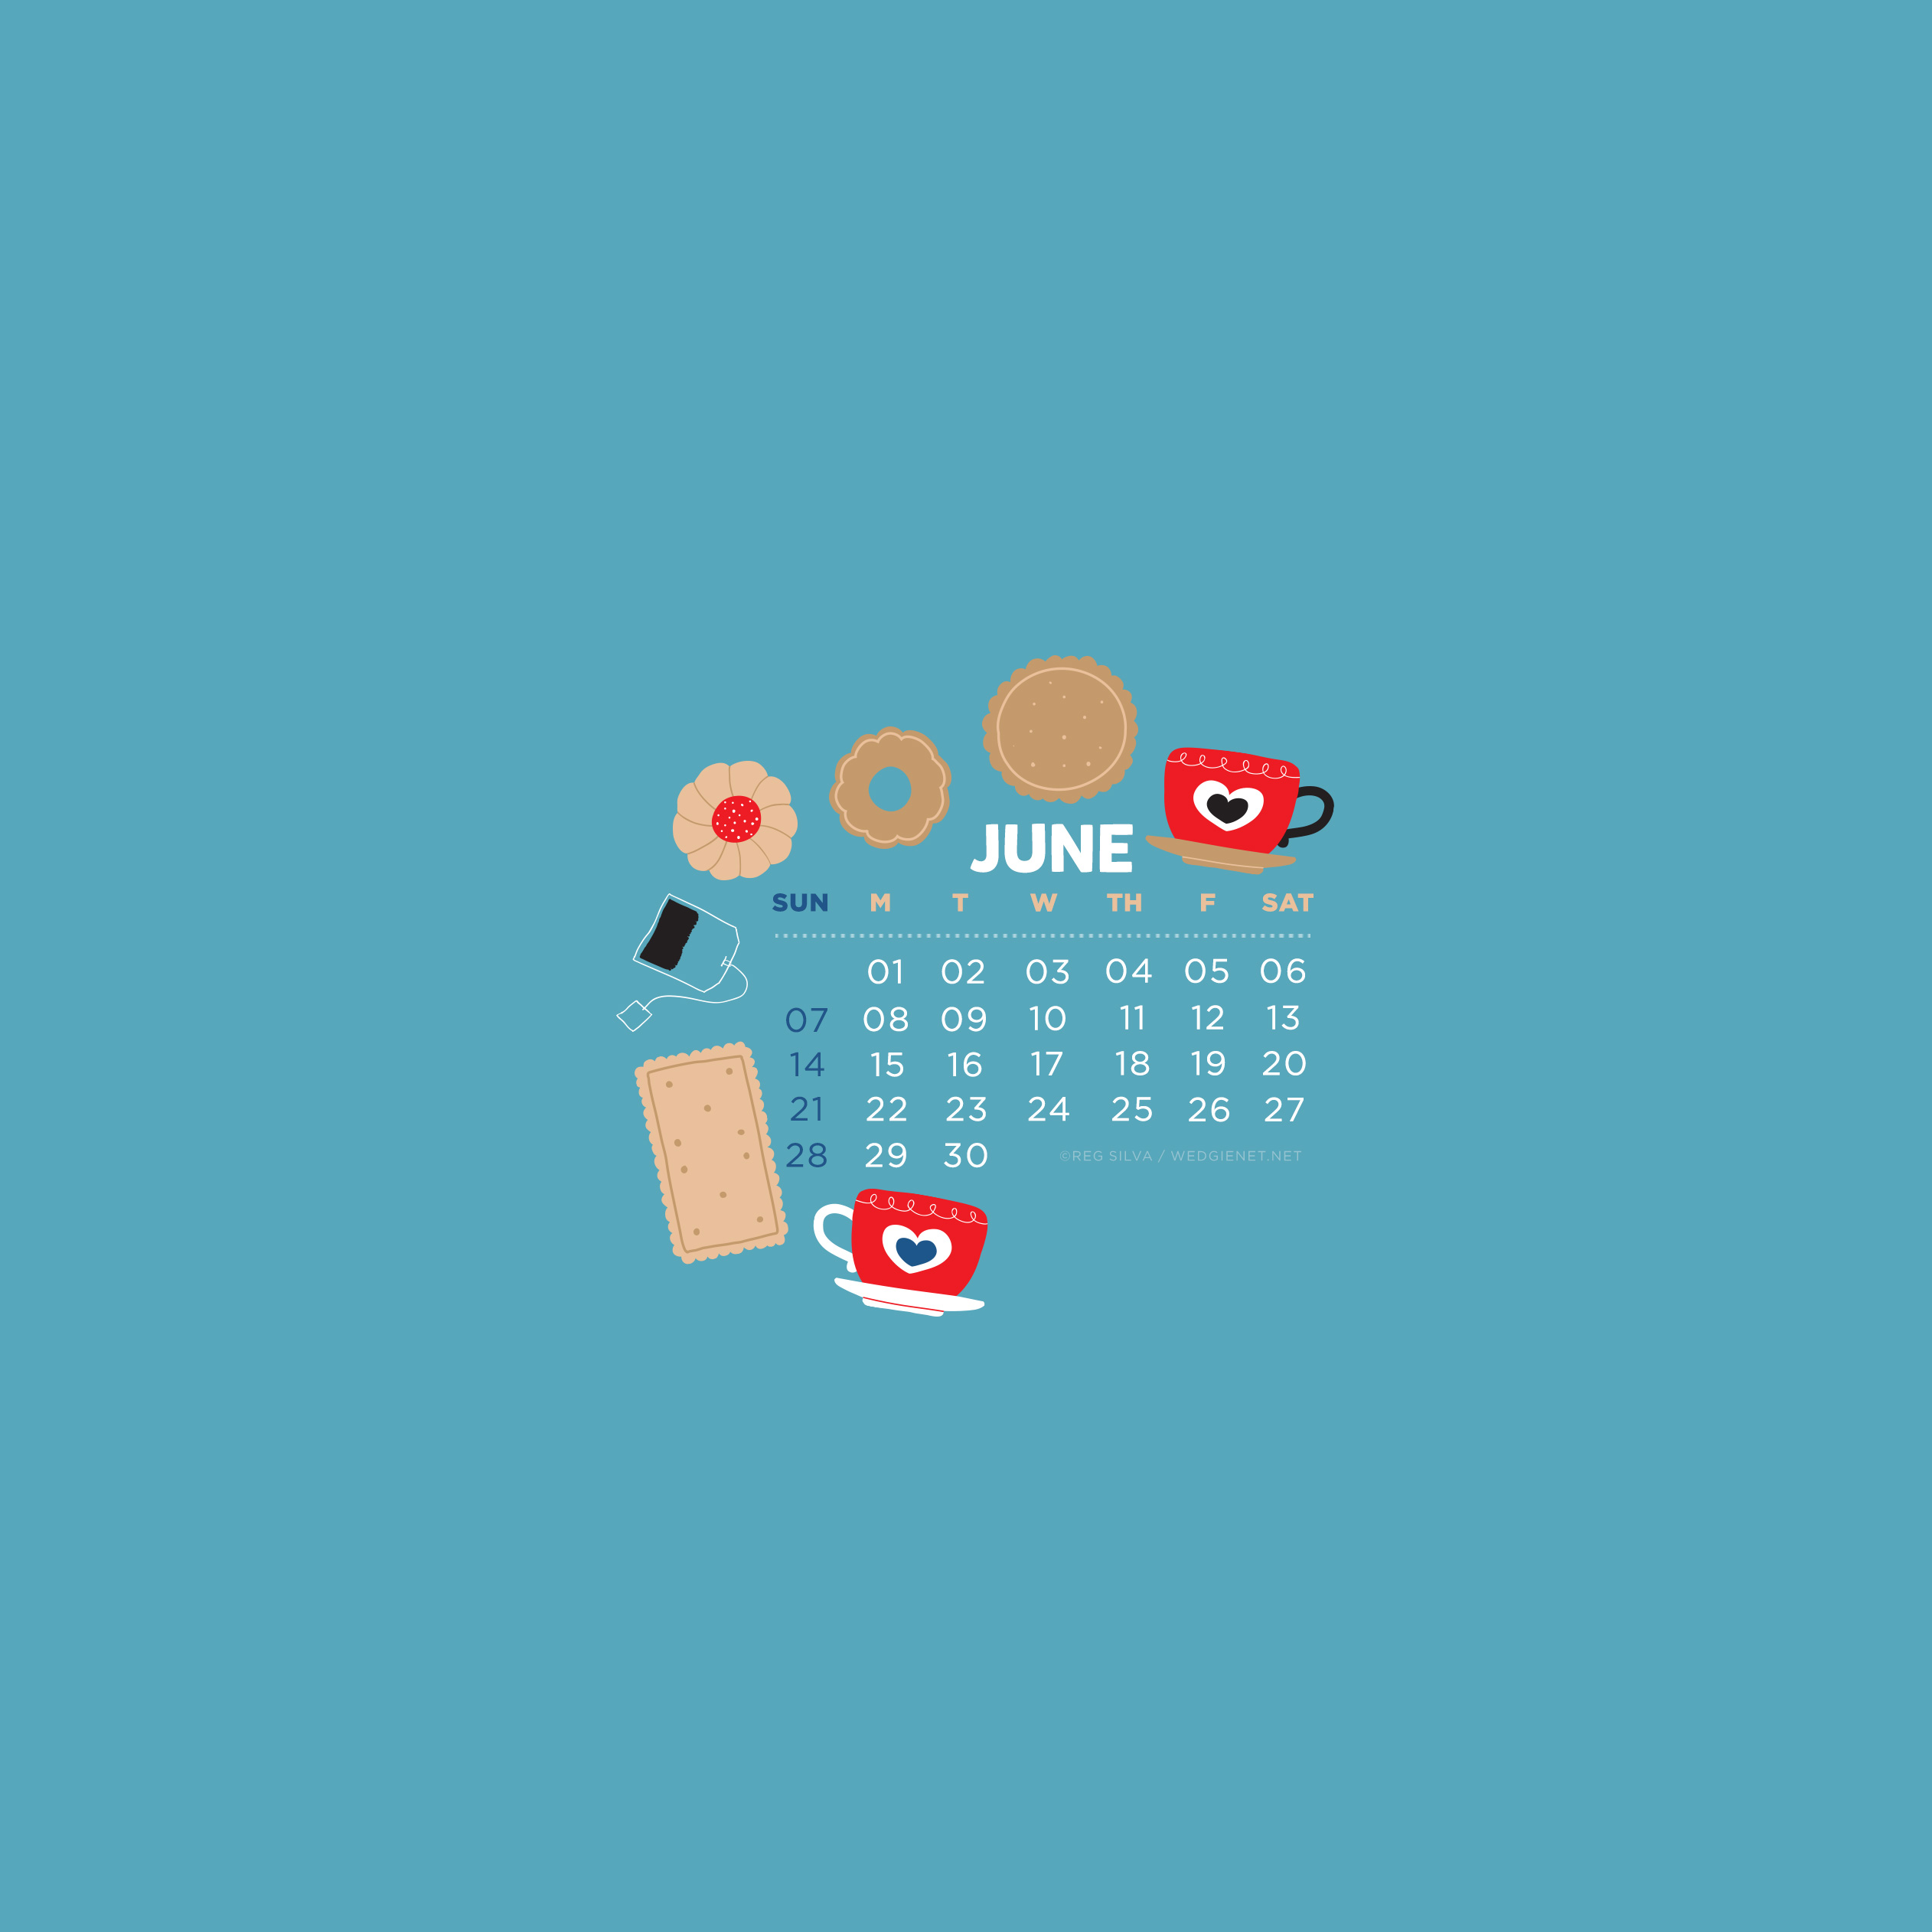 Desktop iPhone iPad Lock Screen Calendar Wallpaper Wedgie